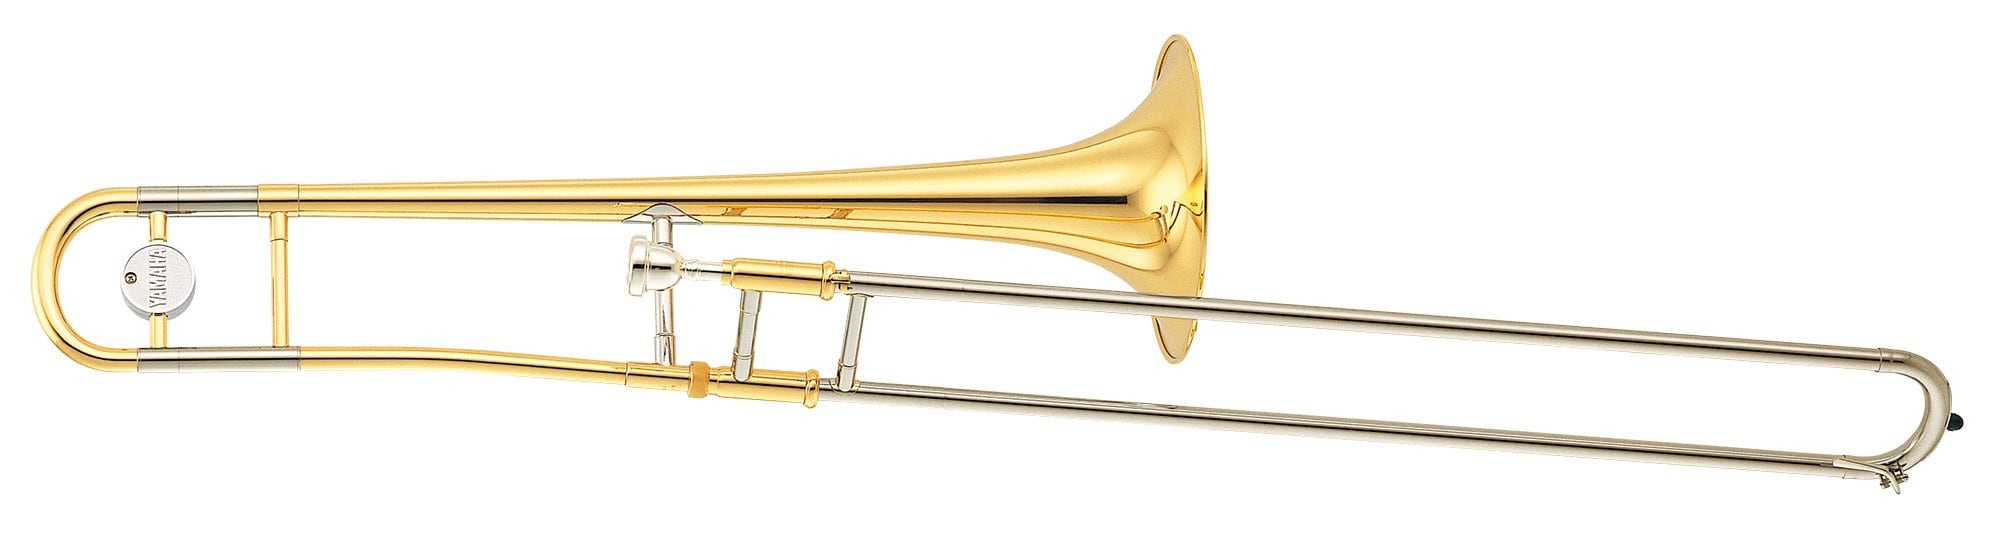 YSL-354 - Overview - Trombones - Brass & Woodwinds - Musical 